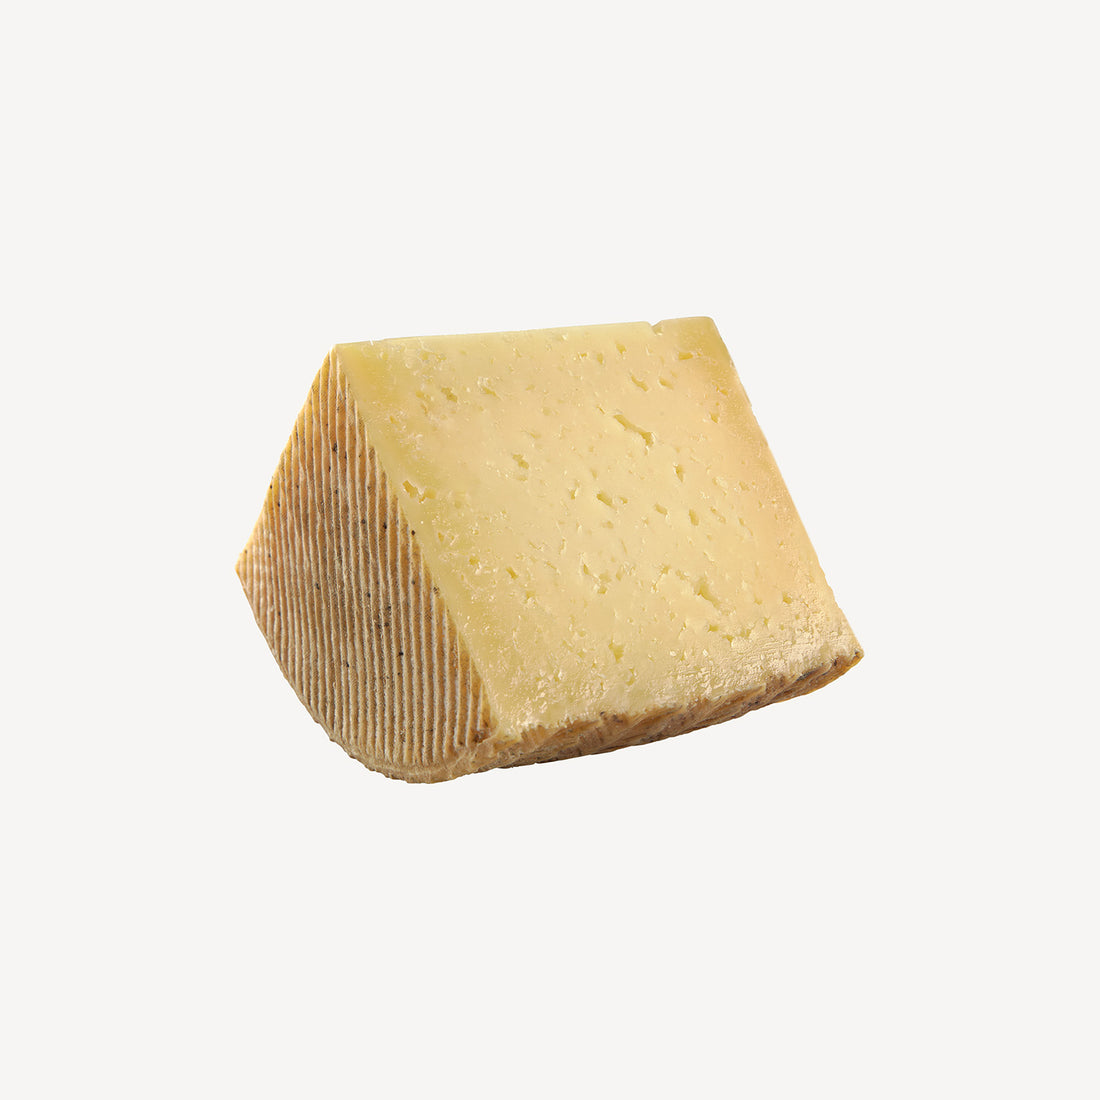 La cuña de queso curado manchego destaca la perfección de la maduración, un preludio a un viaje de sabor intenso y textura exquisita.